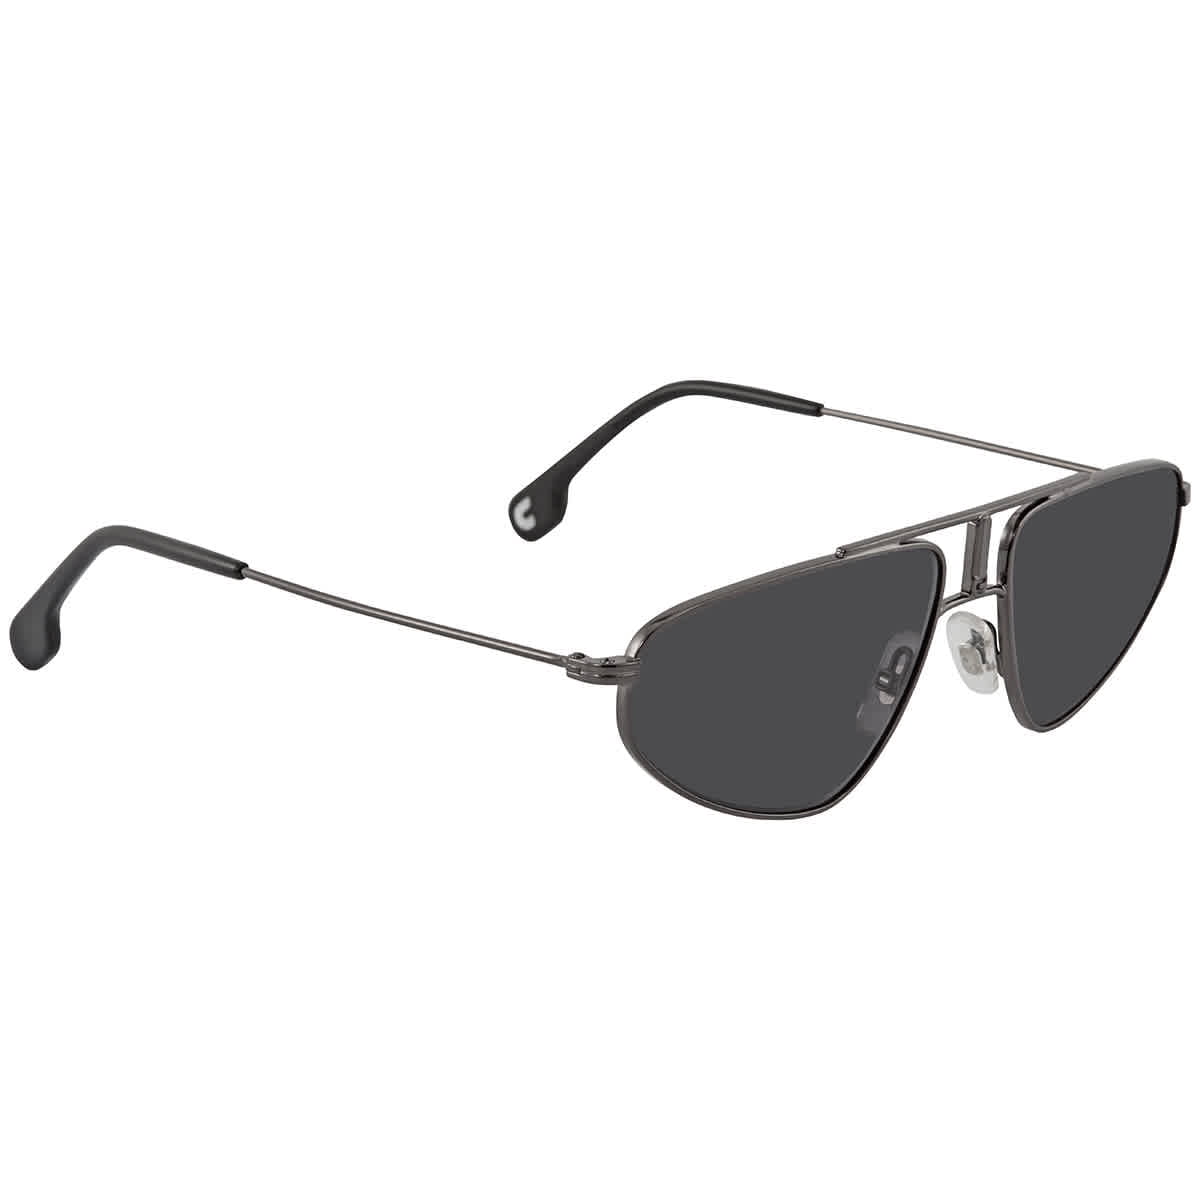 Carrera New Sunglasses Pace Aviator Matt Black Black Iridium 003IR 53 20 145 